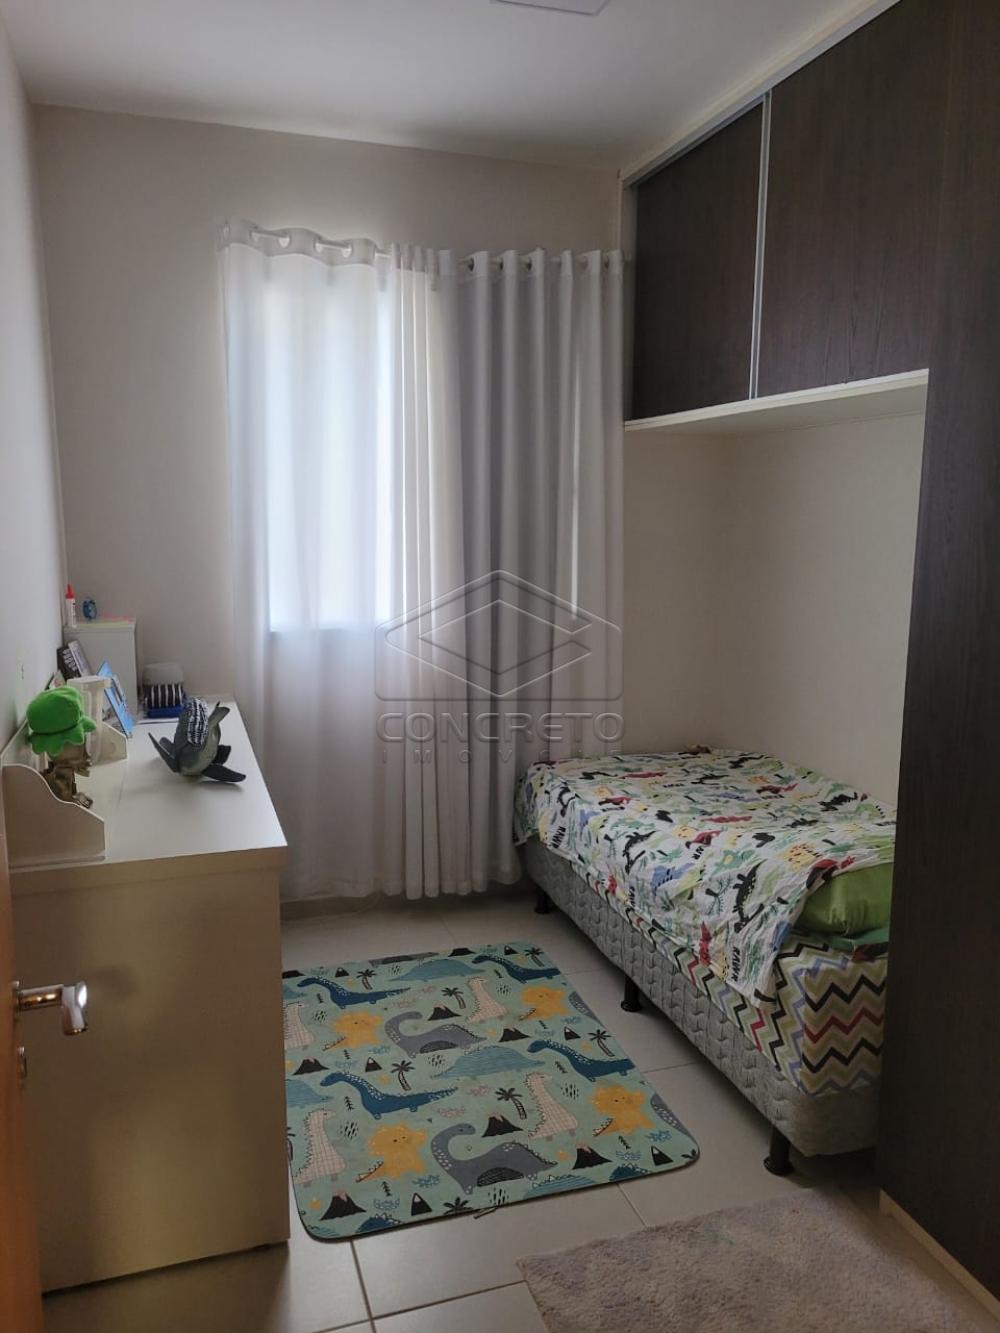 Comprar Apartamento / Padrão em Bauru R$ 430.000,00 - Foto 5